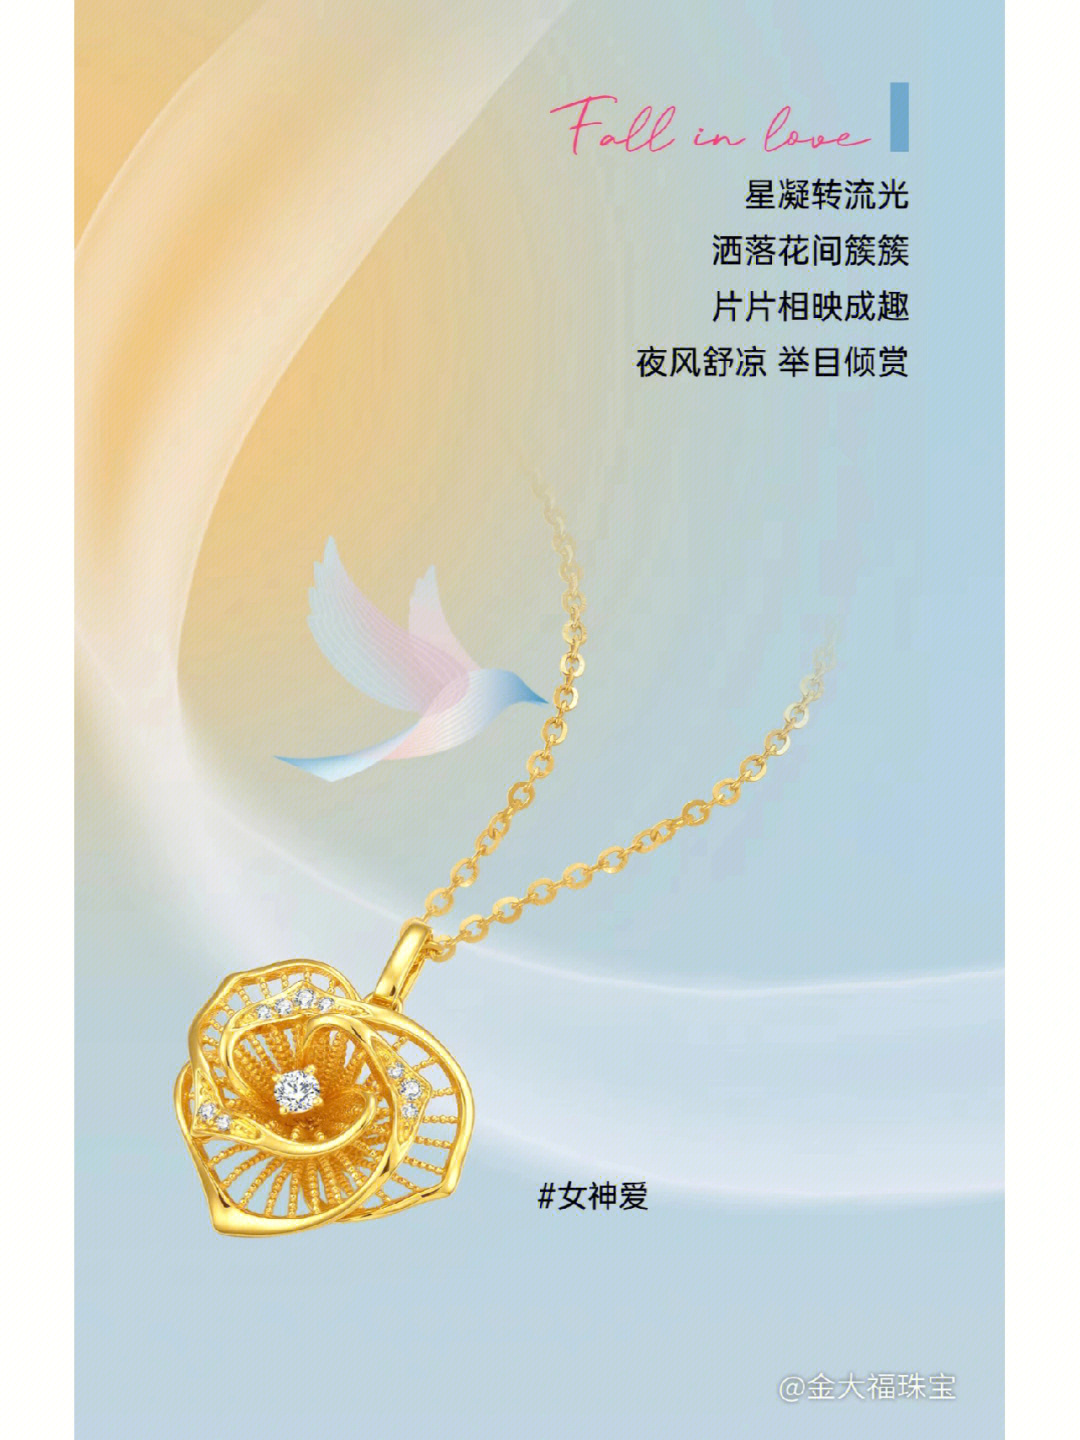 金大福珠宝广告语图片